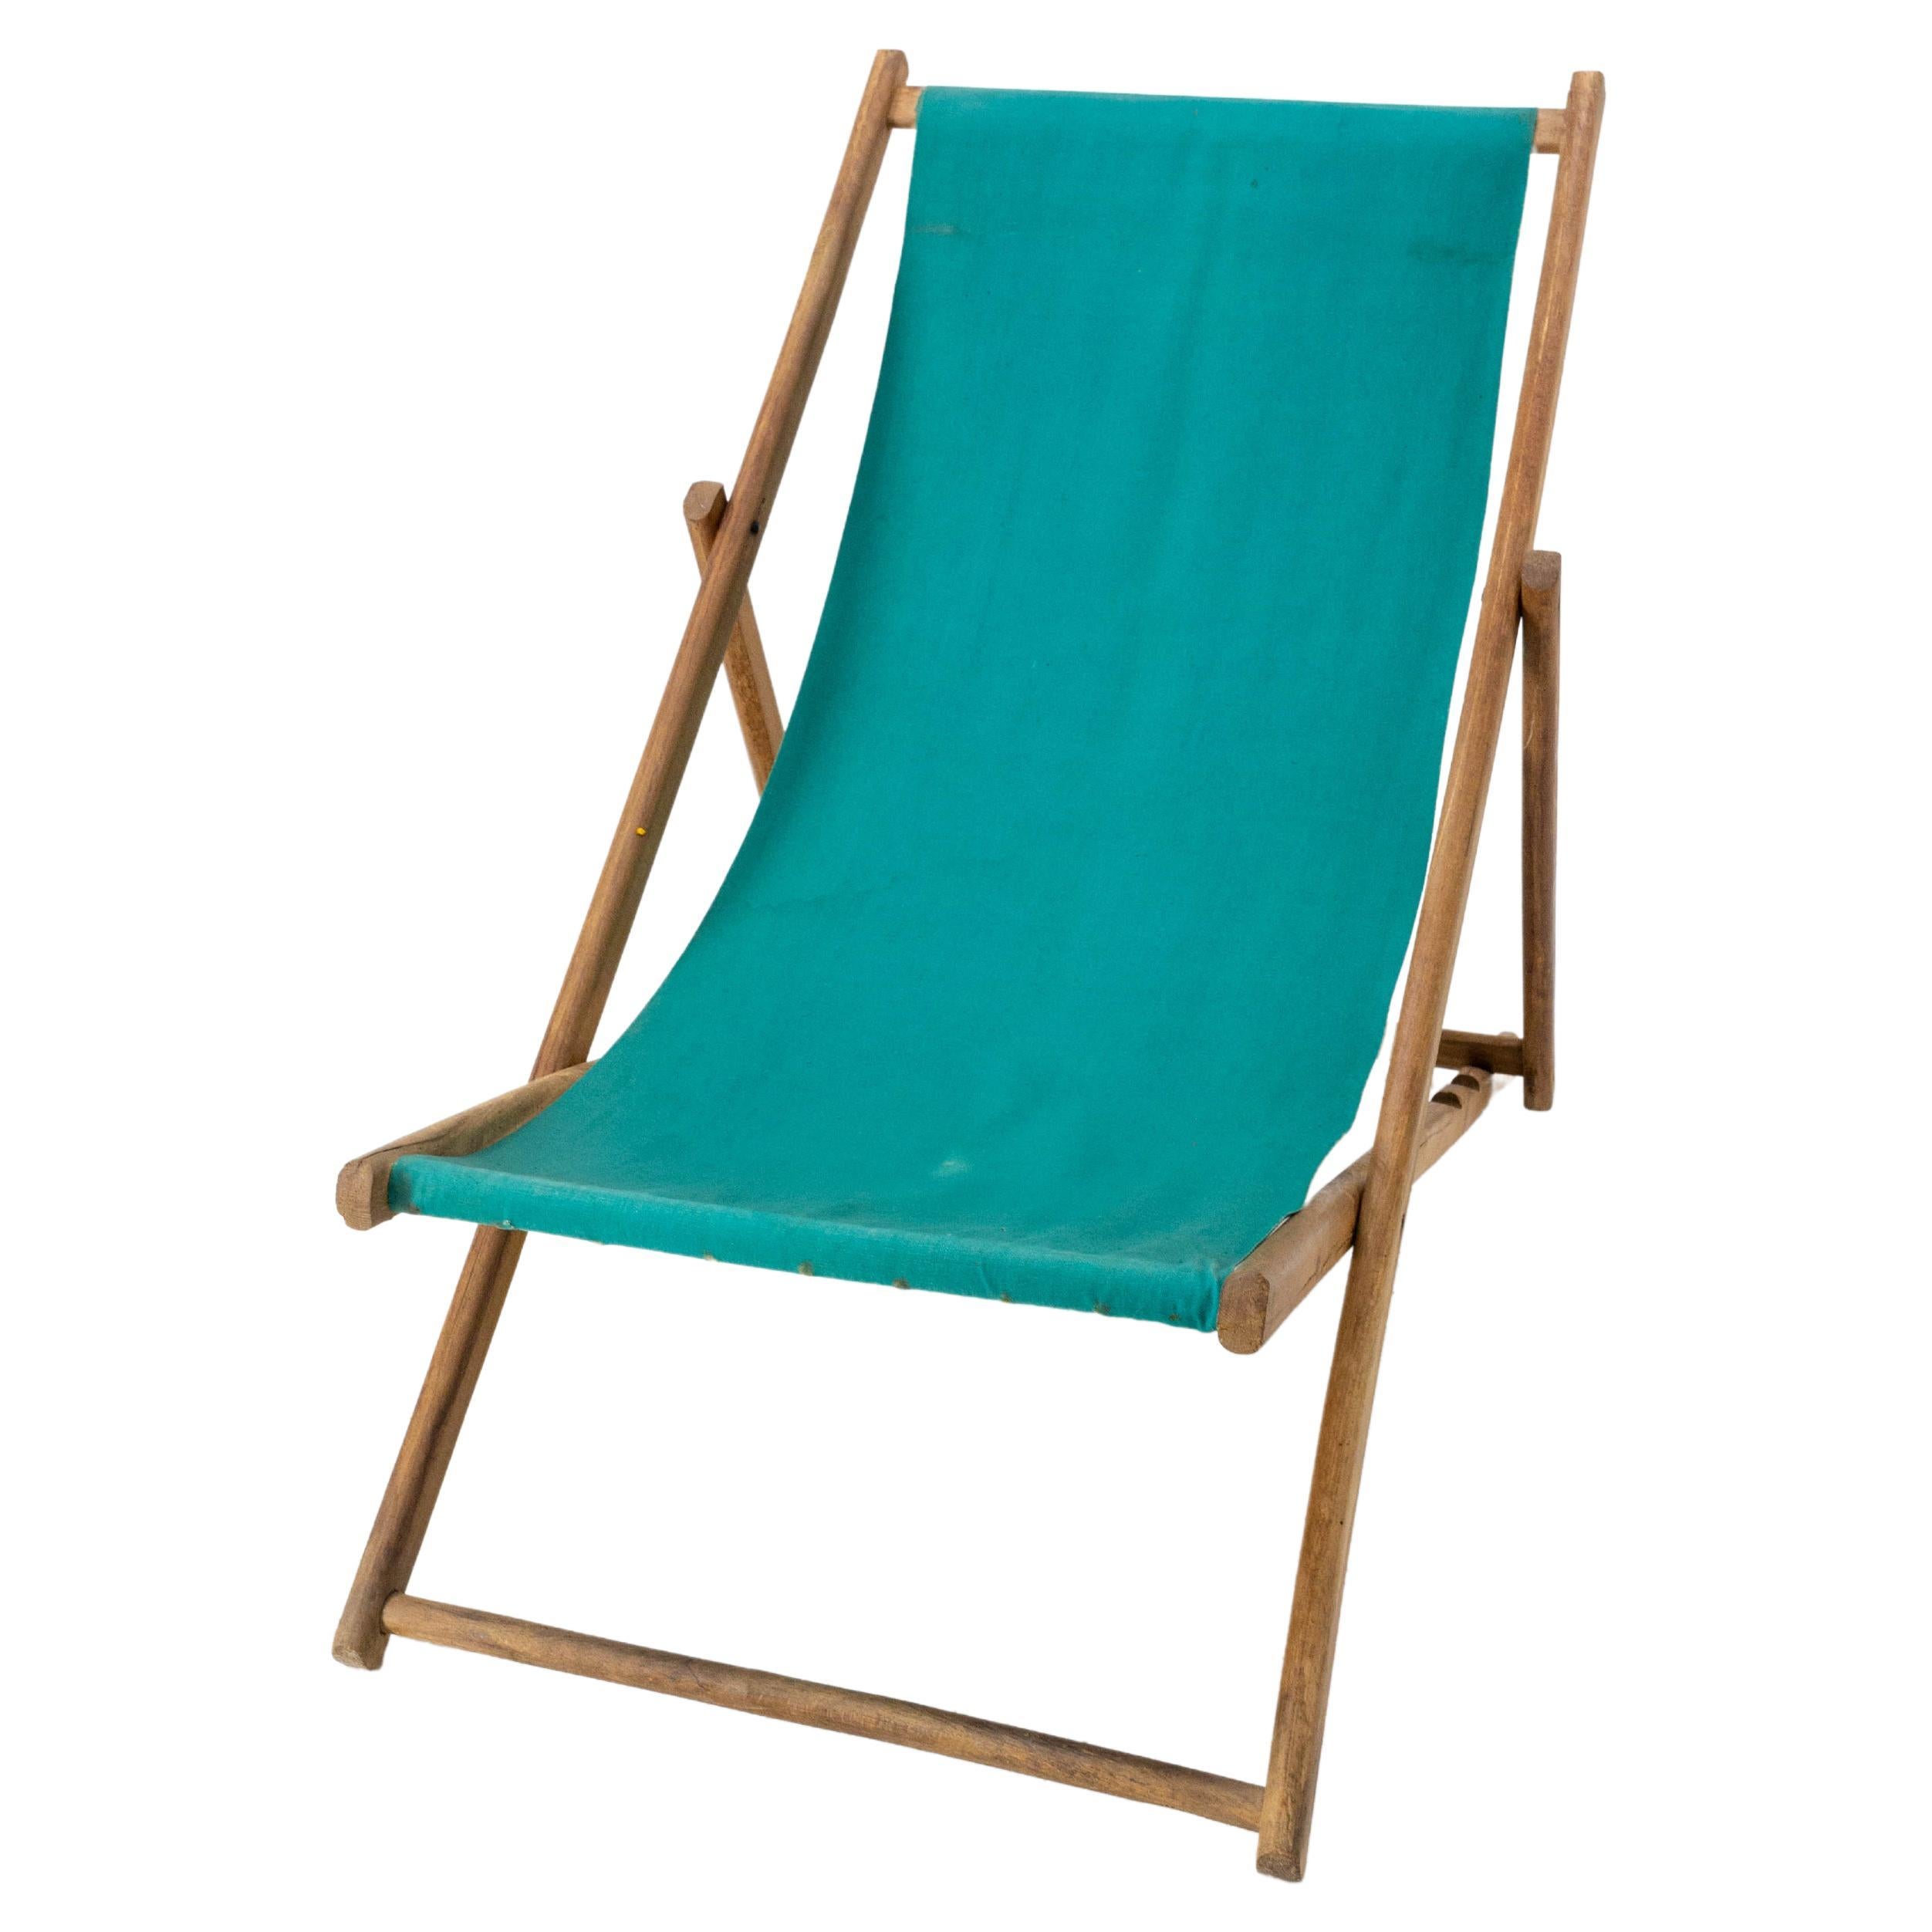 Transat Folding Deck Chair Patio Lounger, Buche und Stoff Chaise Longue, Französisch